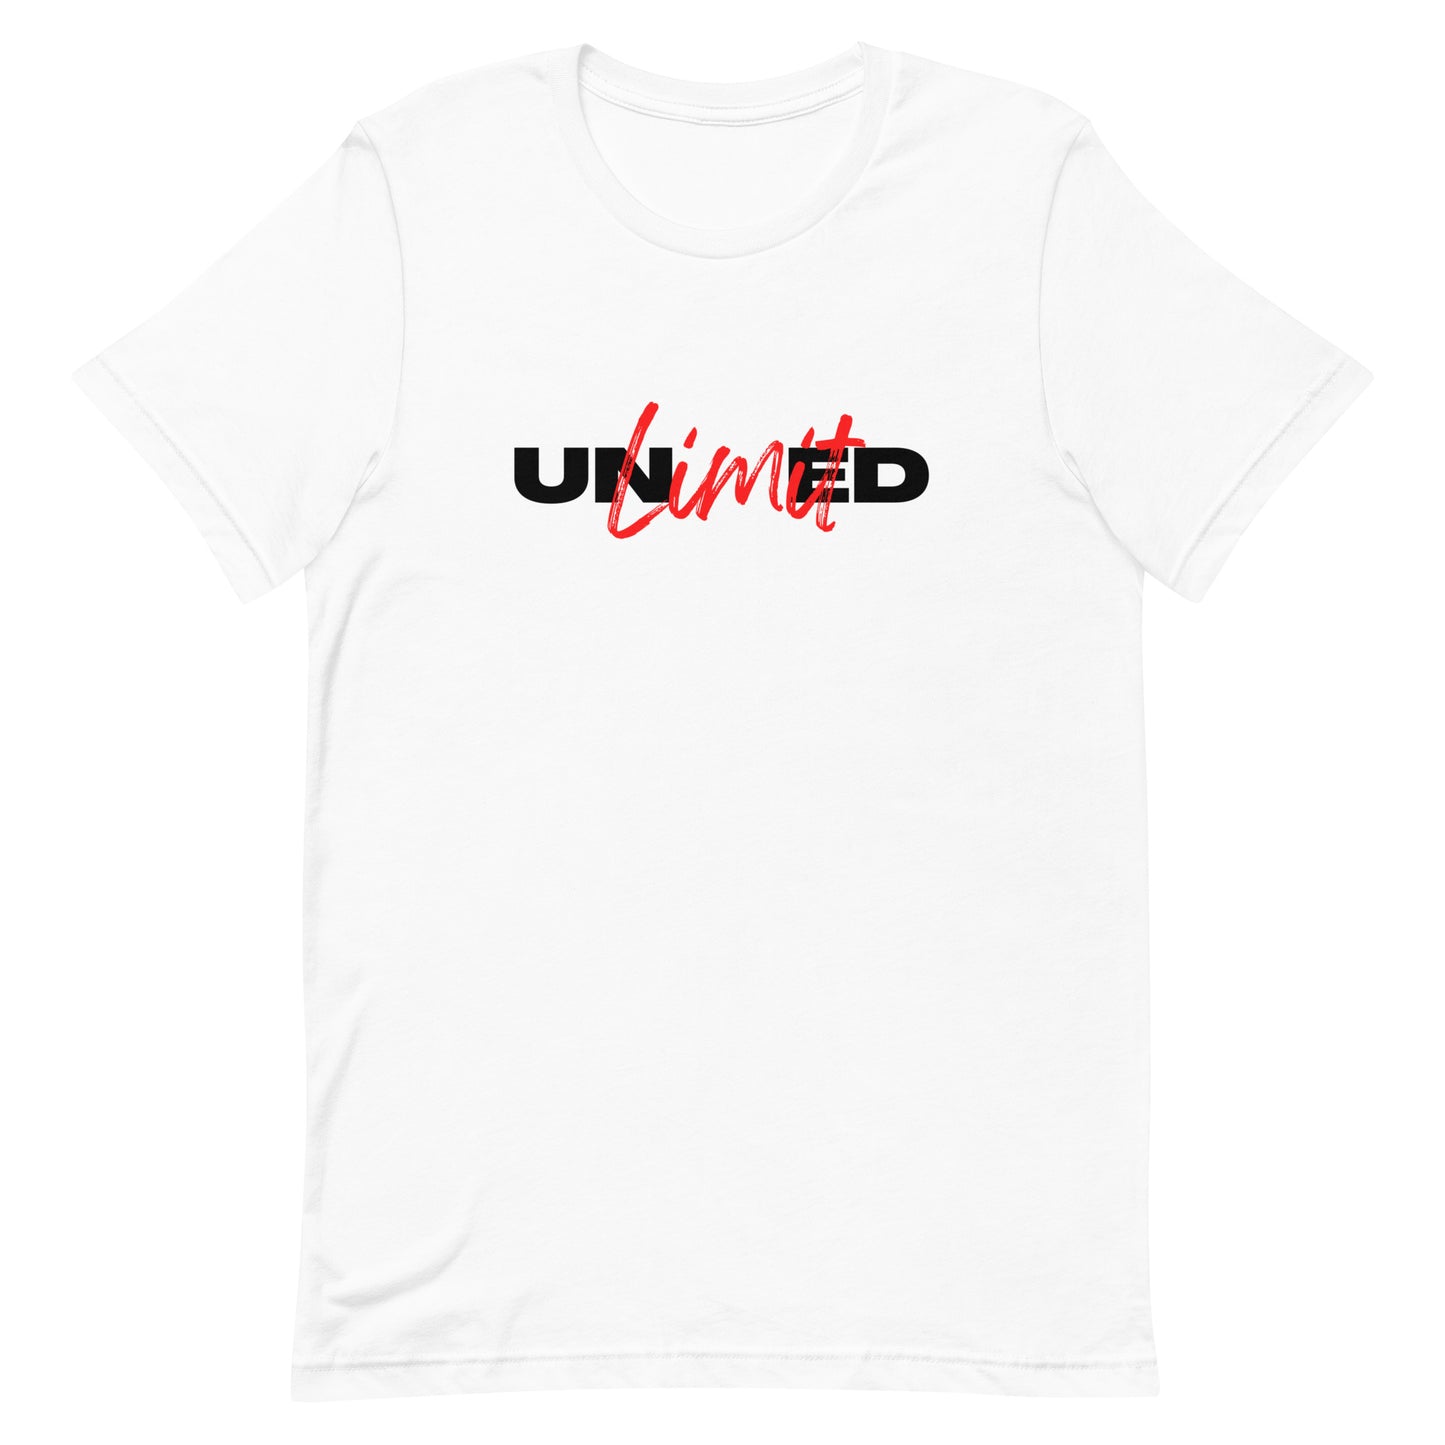 UNLIMITED - Unisex t-shirt